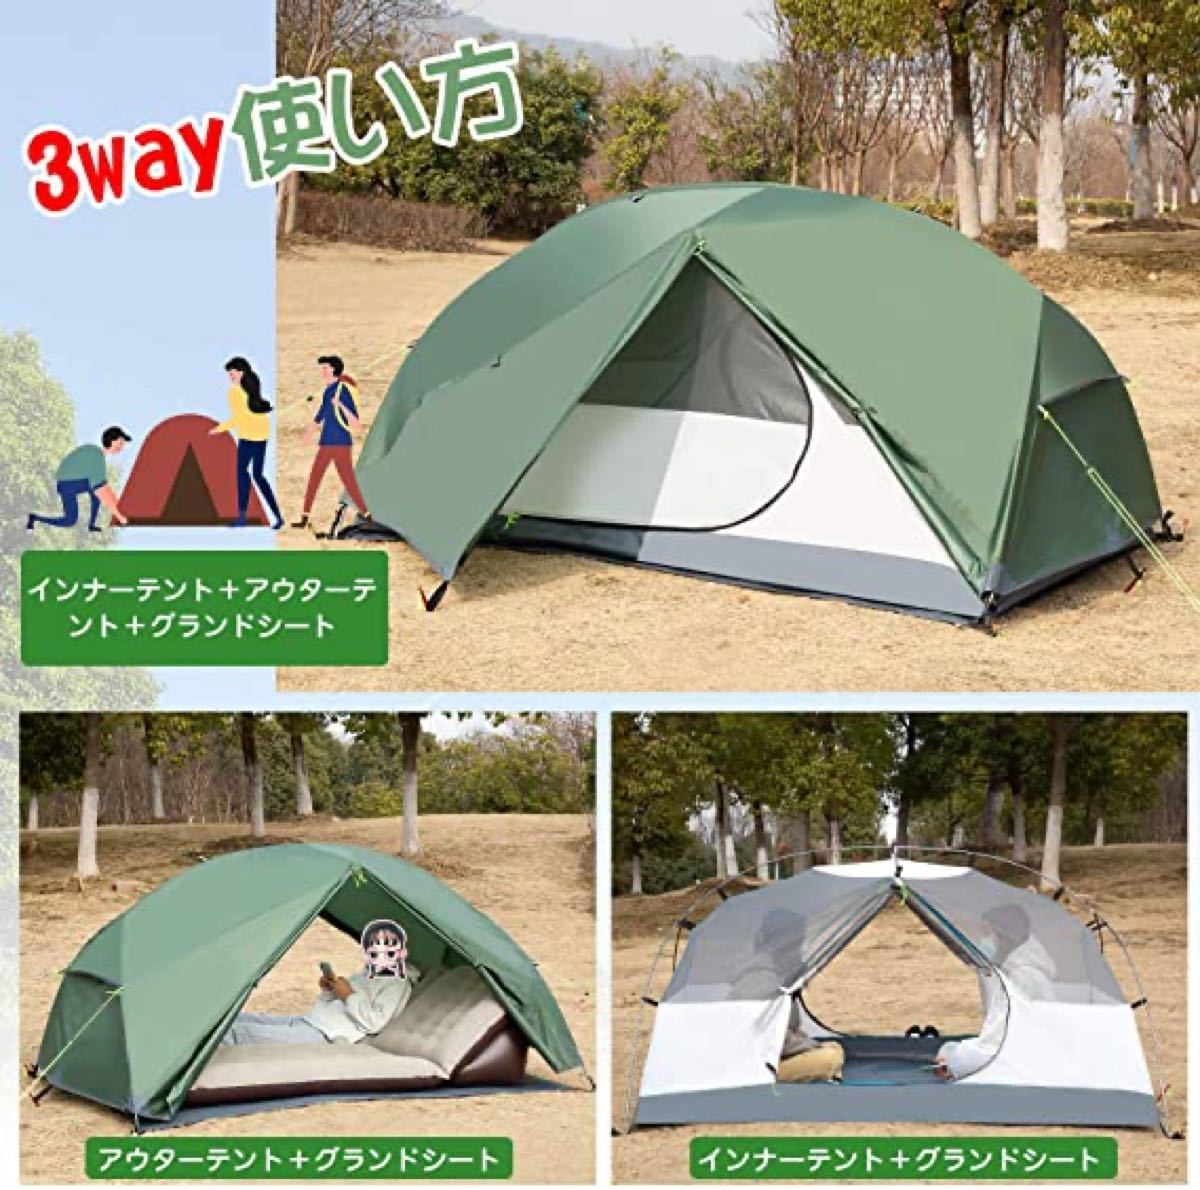 テント 2人用 キャンプテント アウトドアテント 広いスペース 二重層 超軽量